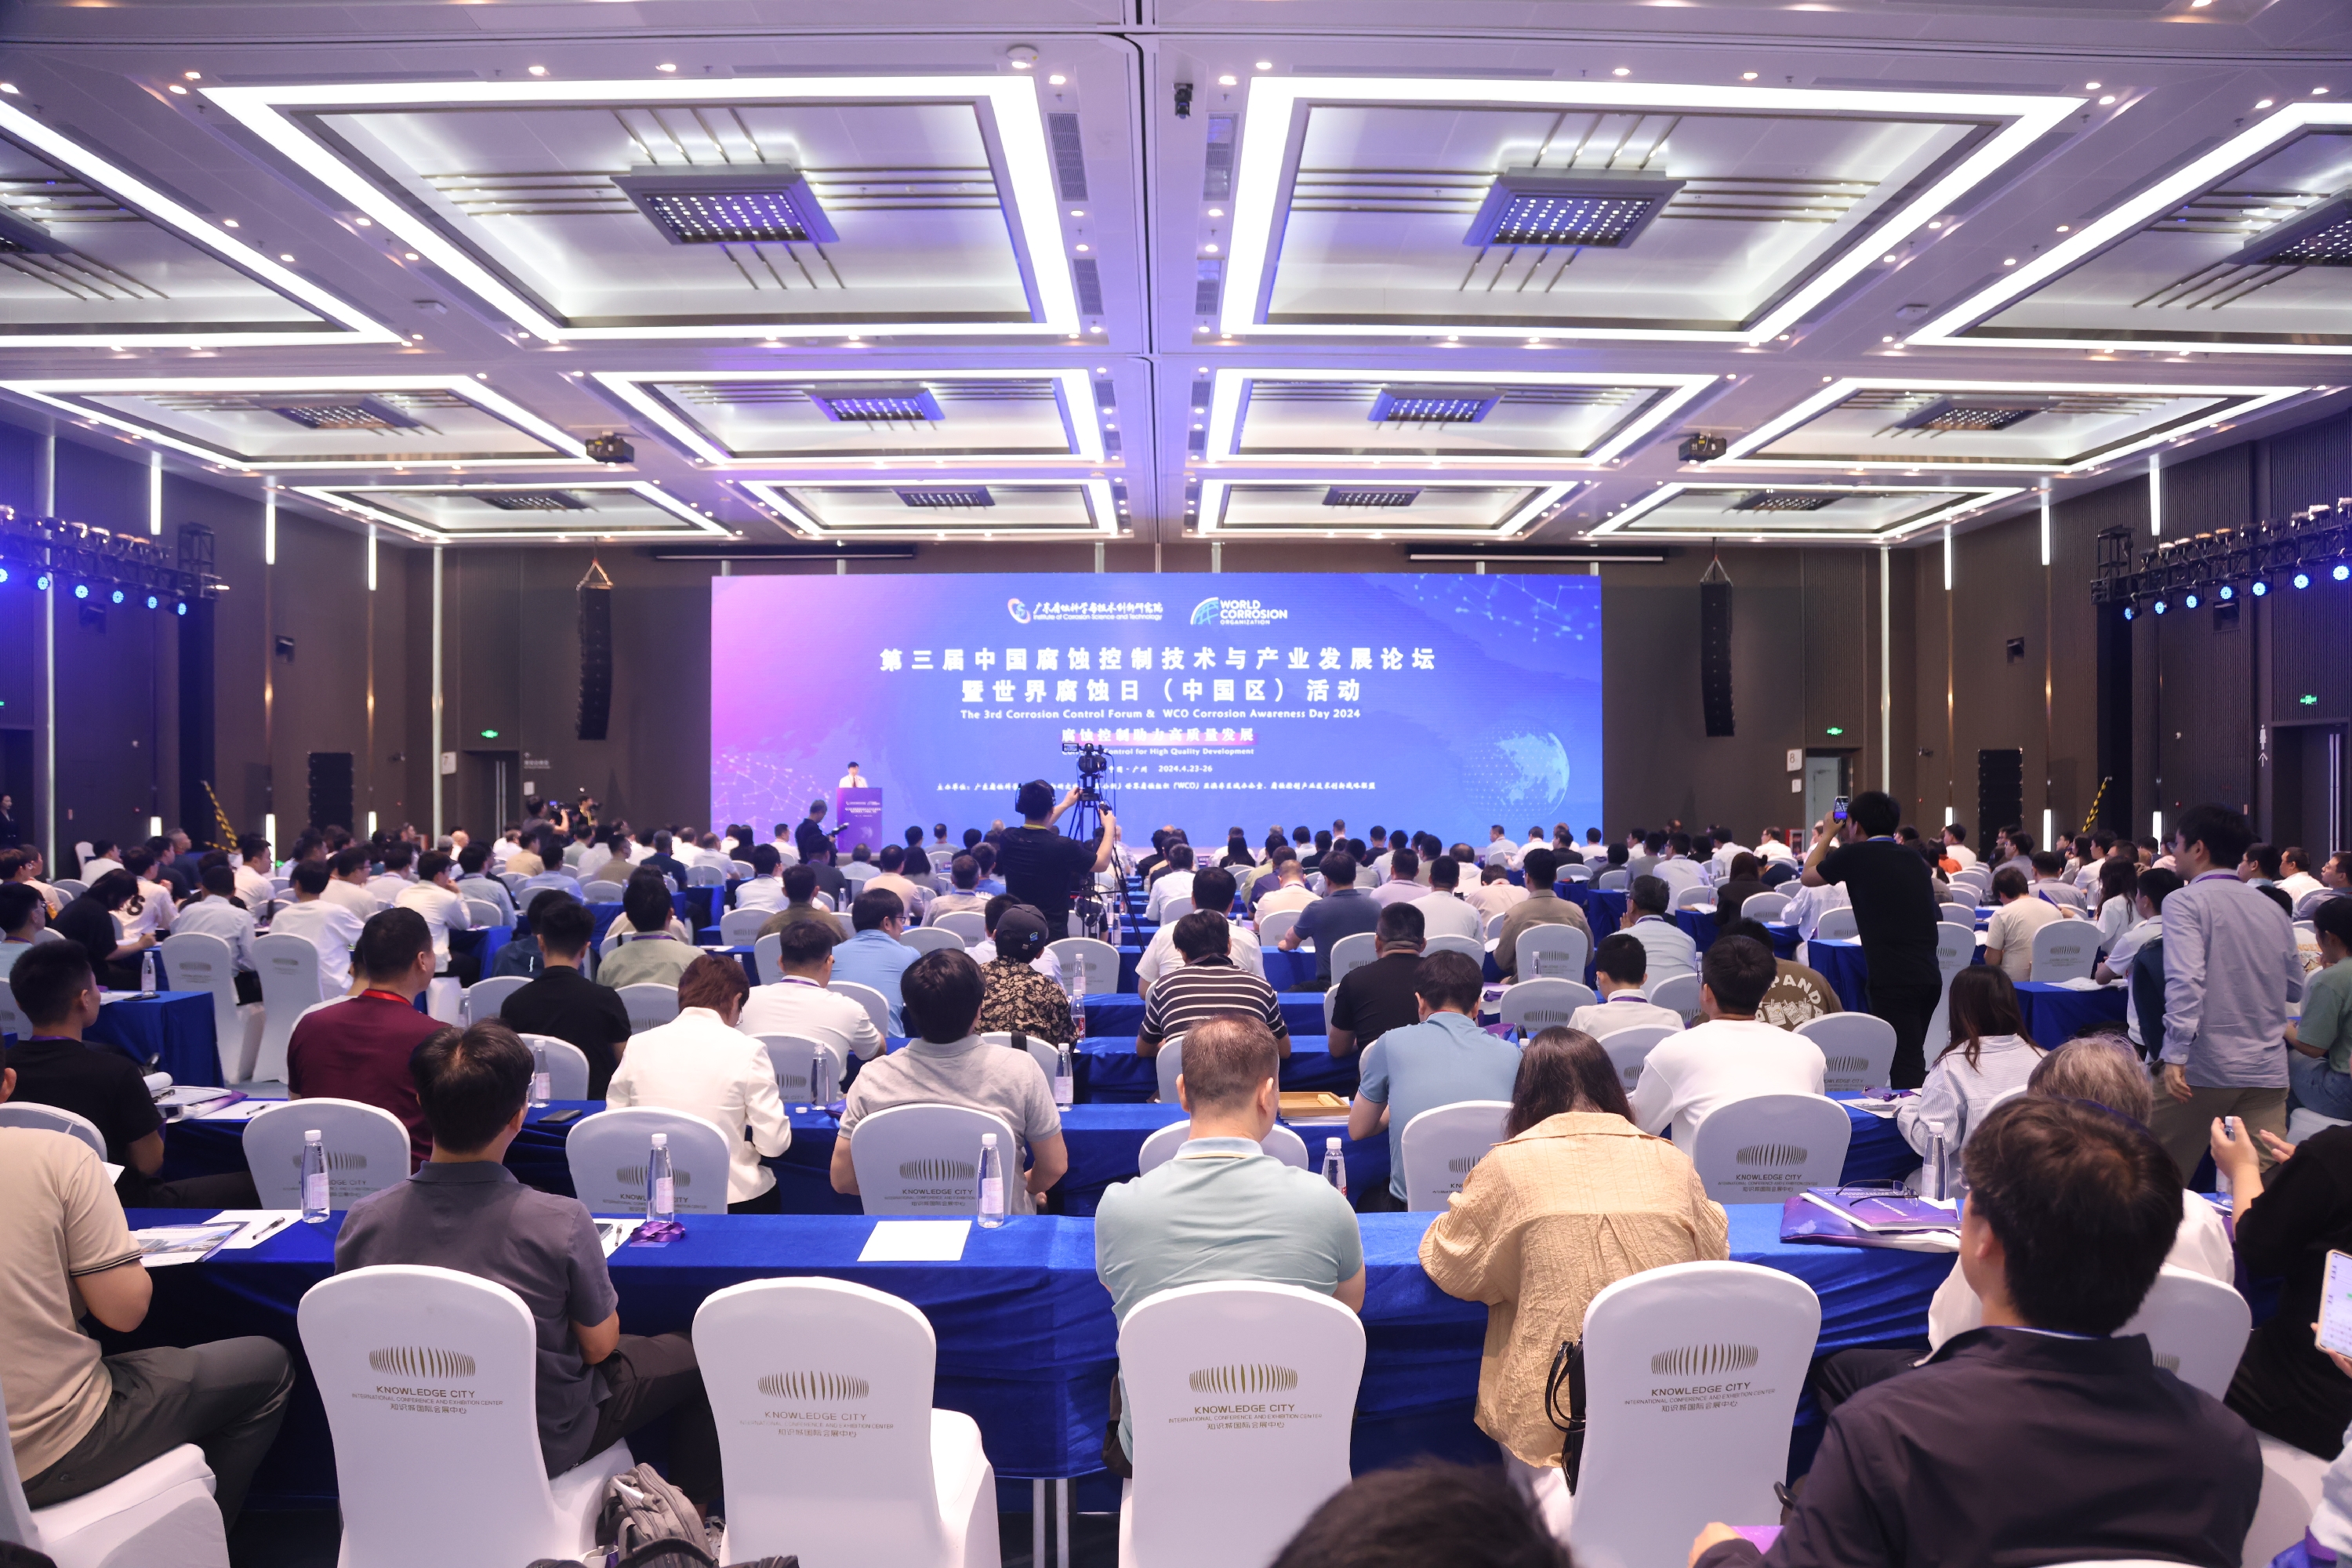 【中國科學報】第三屆中國腐蝕控制技術與產業發展論壇在穗舉行